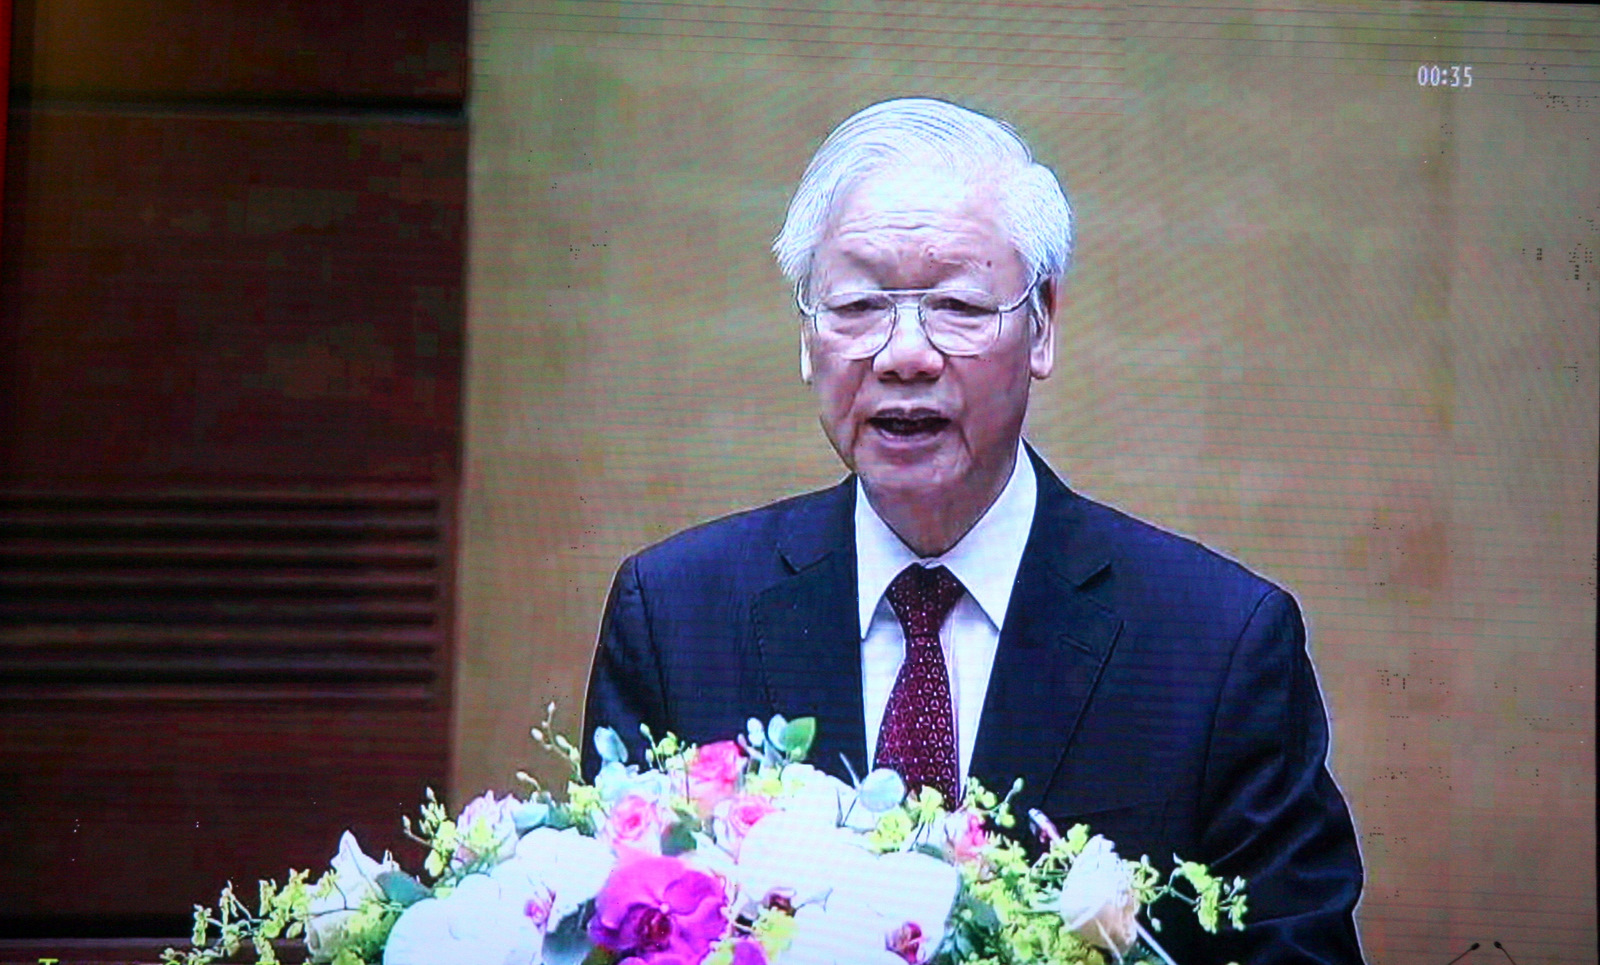 Đồng chí Nguyễn Phú Trọng – Tổng Bí thư Ban Chấp hành Trung ương Đảng dự, chủ trì, phát biểu chỉ đạo tại Hội nghị.